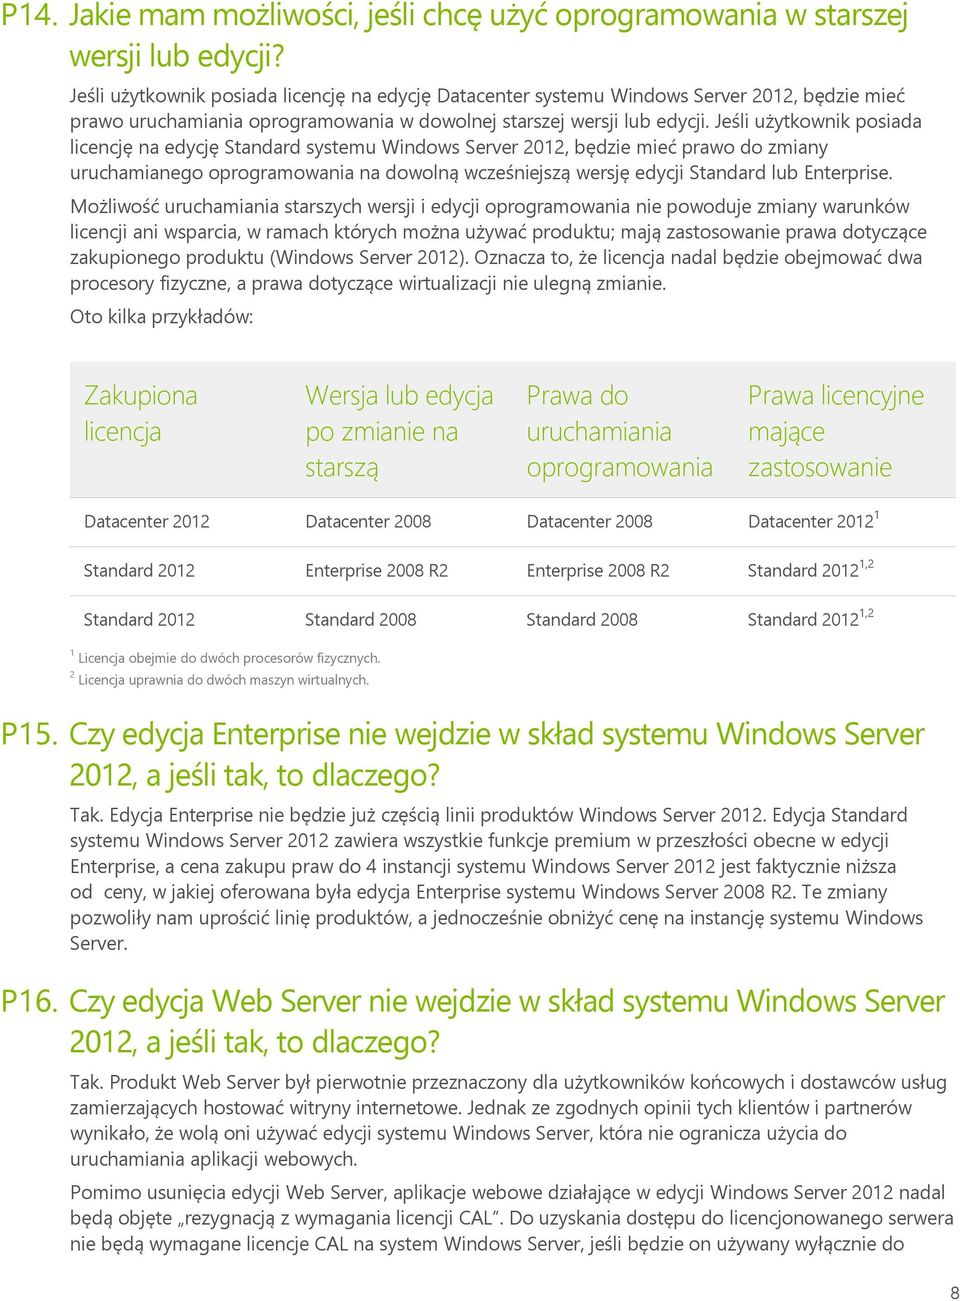 Jeśli użytkownik posiada licencję na edycję Standard systemu Windows Server 2012, będzie mieć prawo do zmiany uruchamianego oprogramowania na dowolną wcześniejszą wersję edycji Standard lub